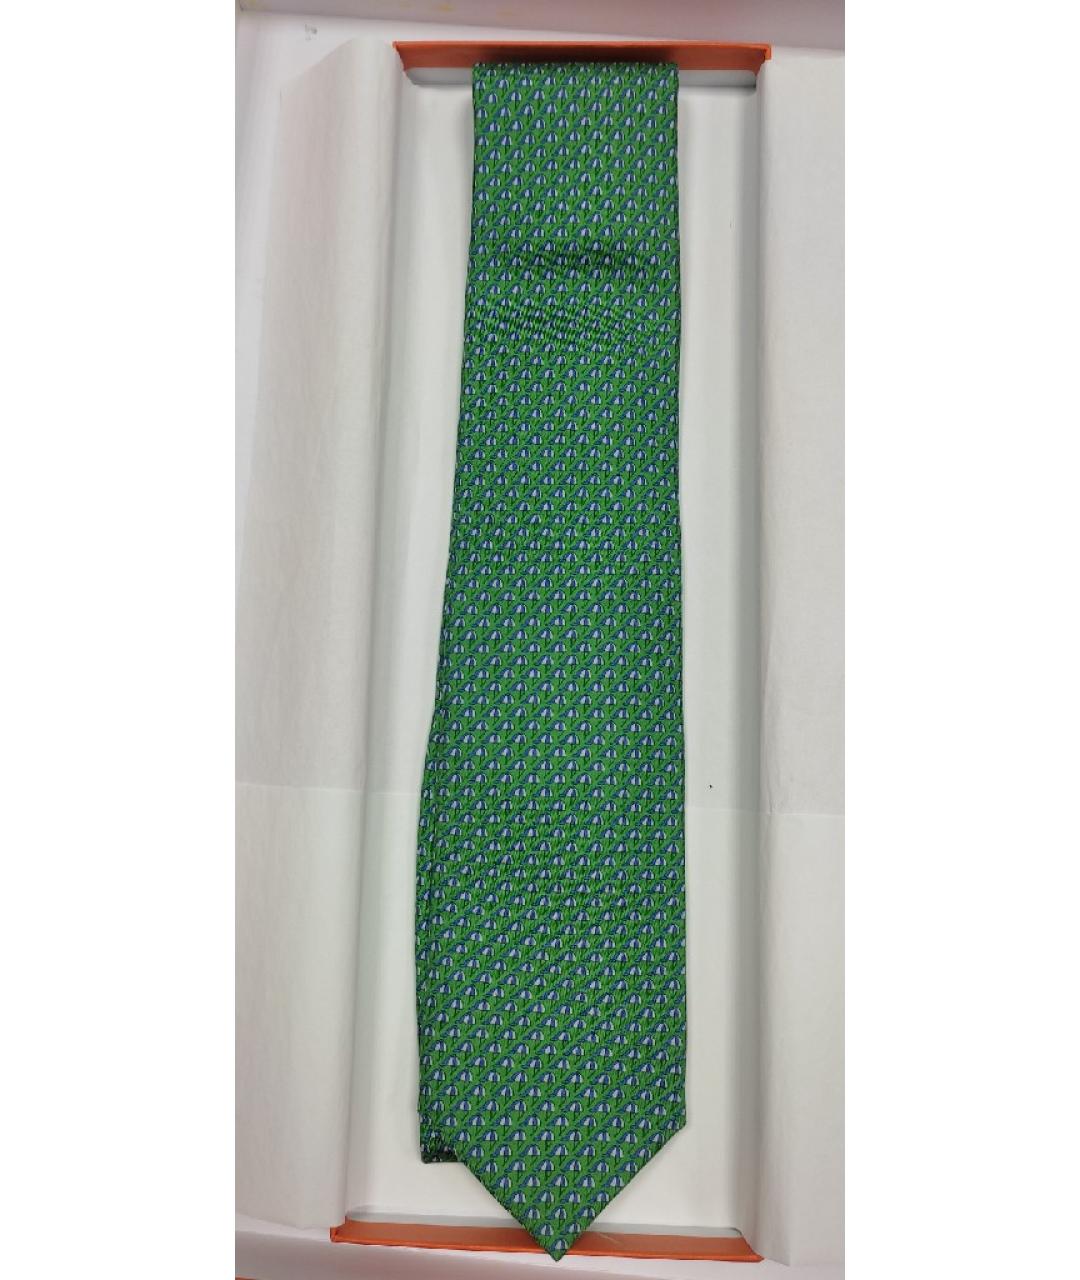 HERMES PRE-OWNED Зеленый шелковый галстук, фото 4